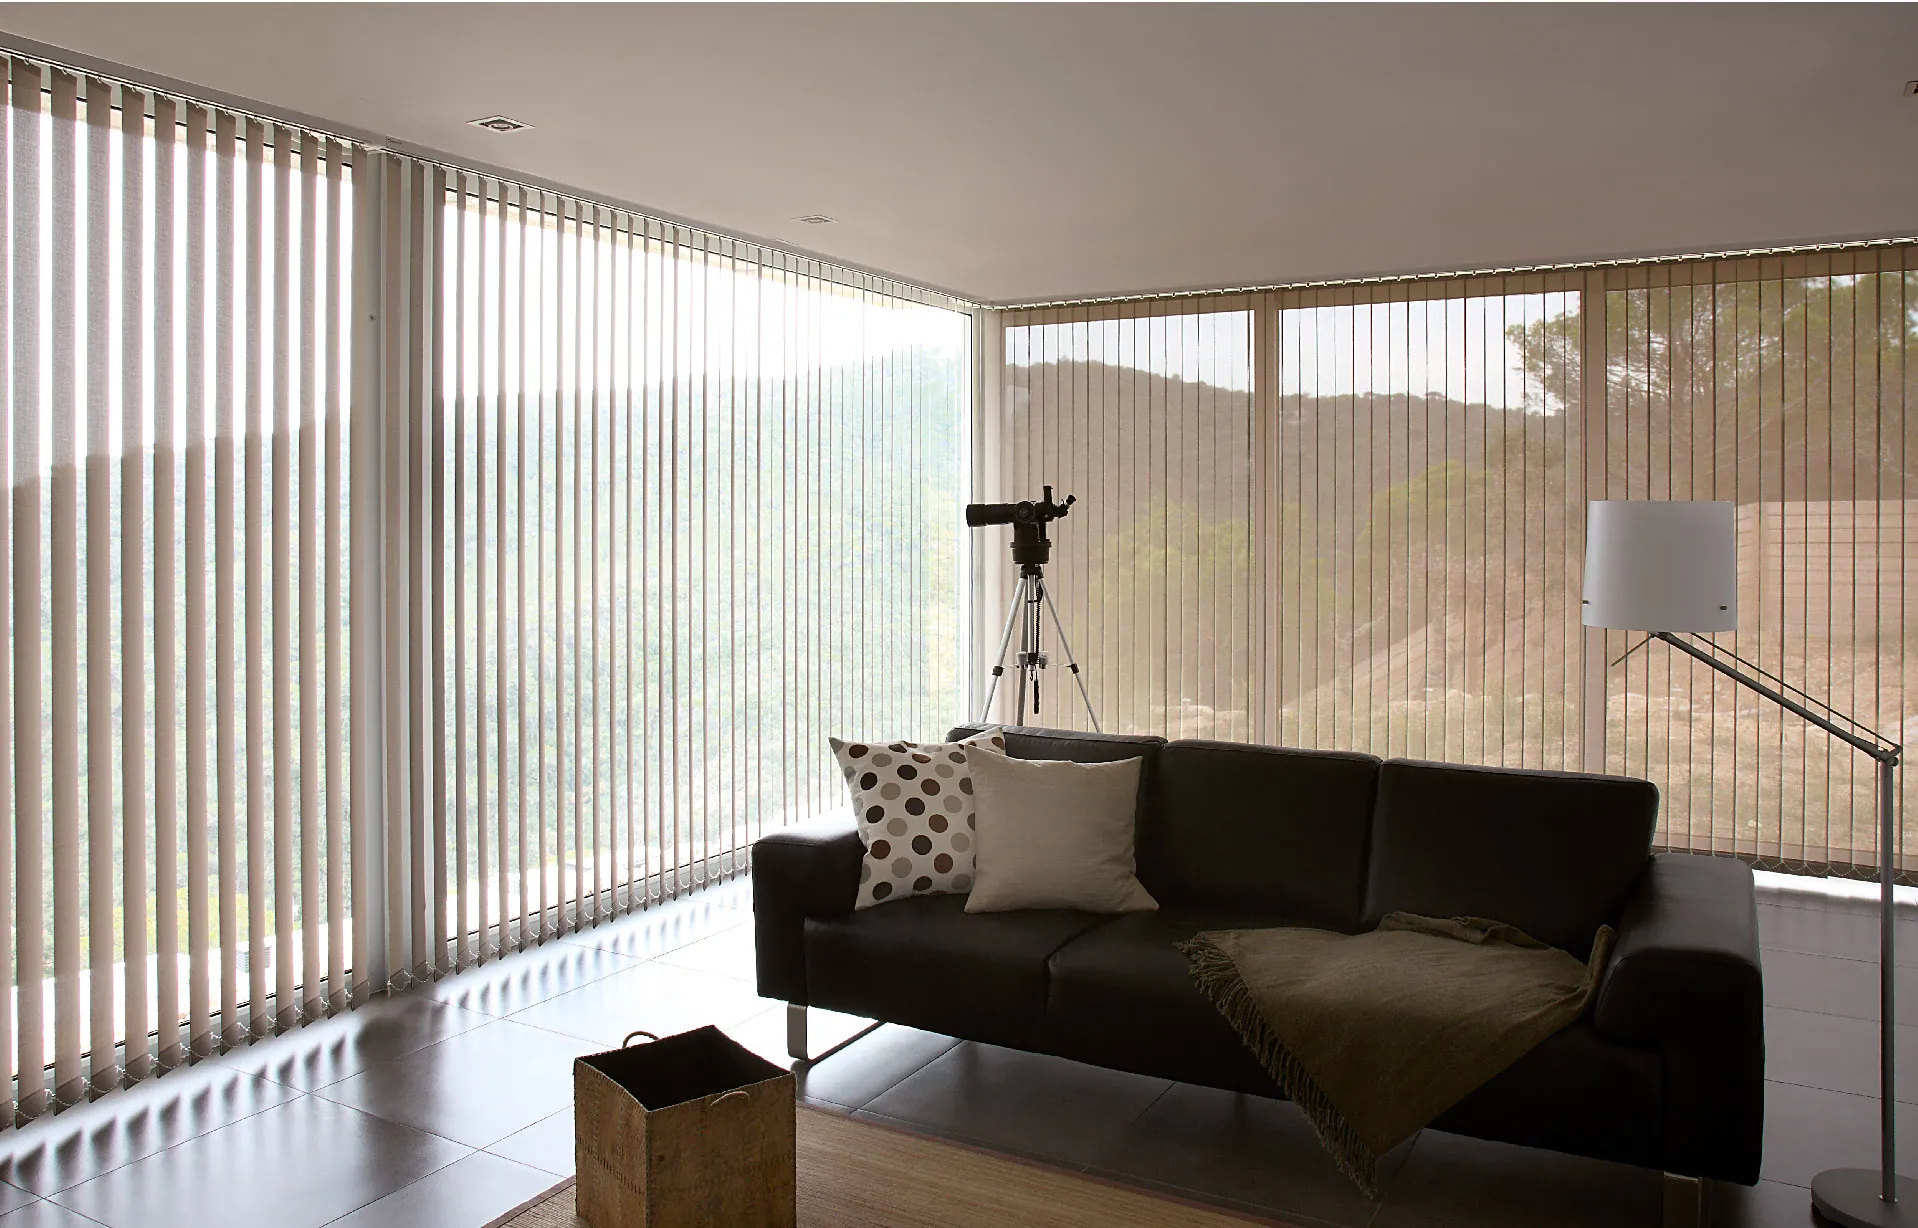 Las persianas verticales Gabín son ideales para cubrir desniveles, ventanas en escaleras, o estructuras con curvas gracias a su mecanismo versatil y adaptable.